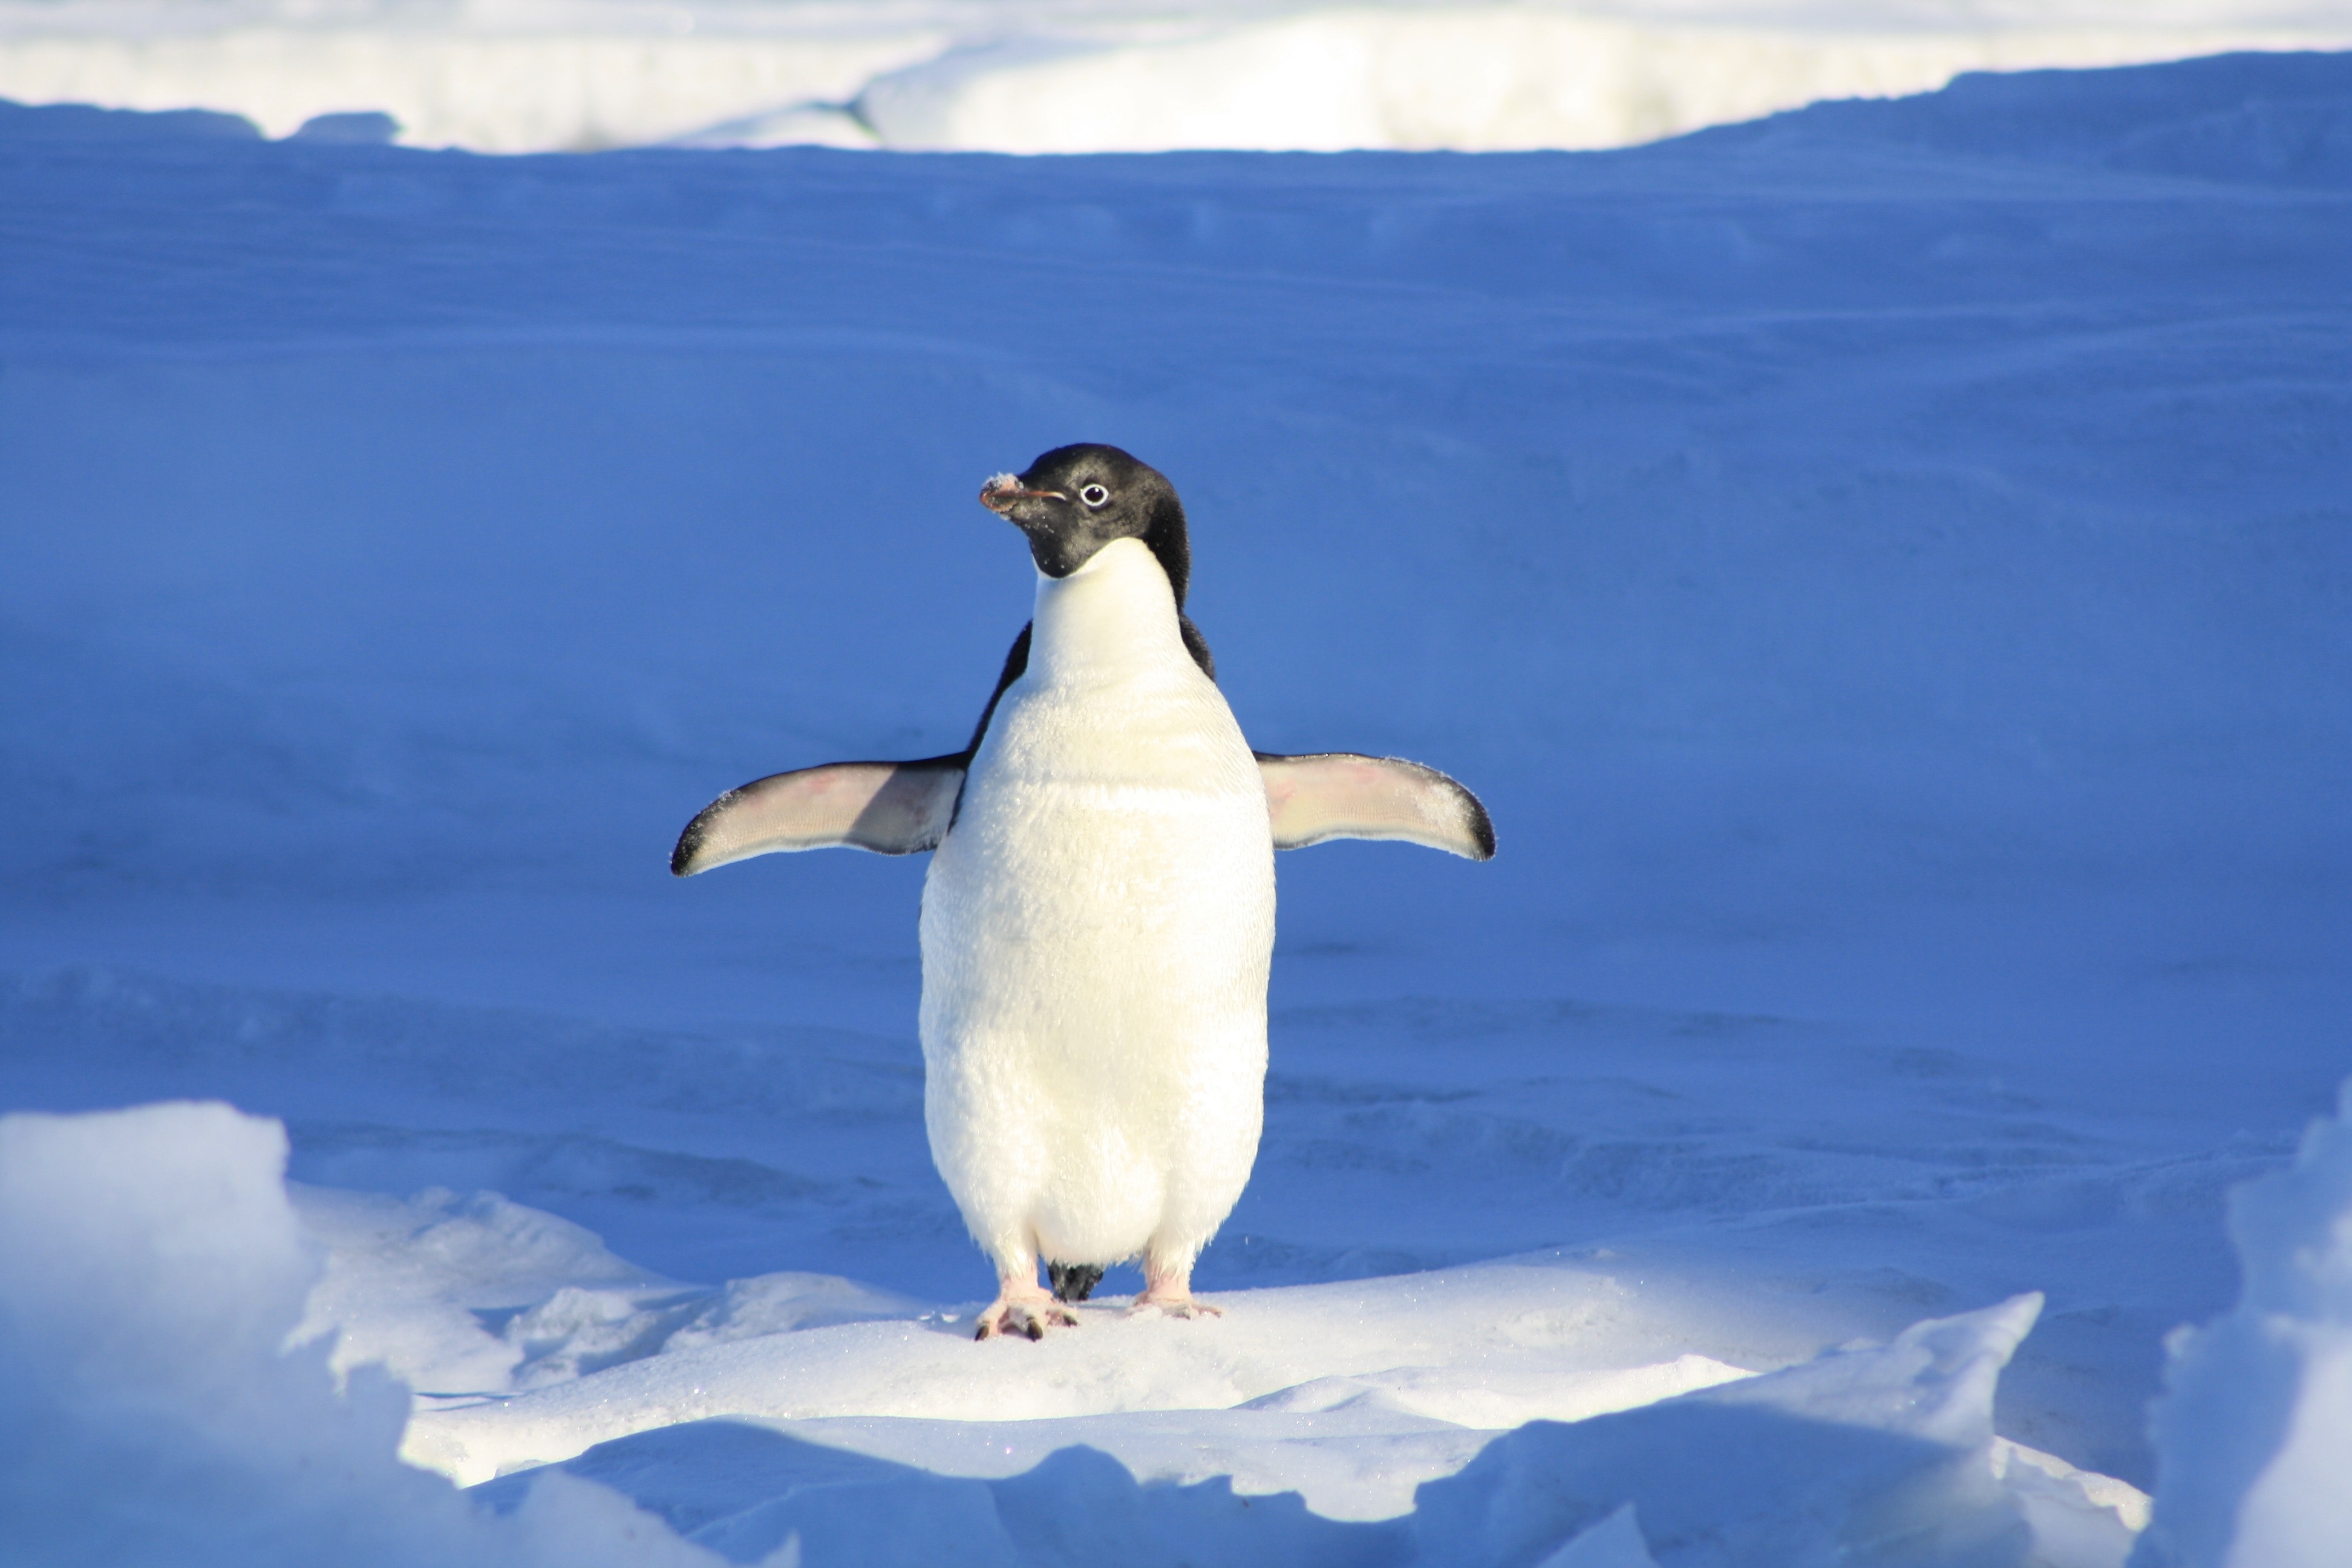 Chim cánh cụt con dang rộng đôi cánh trông rất đáng yêu